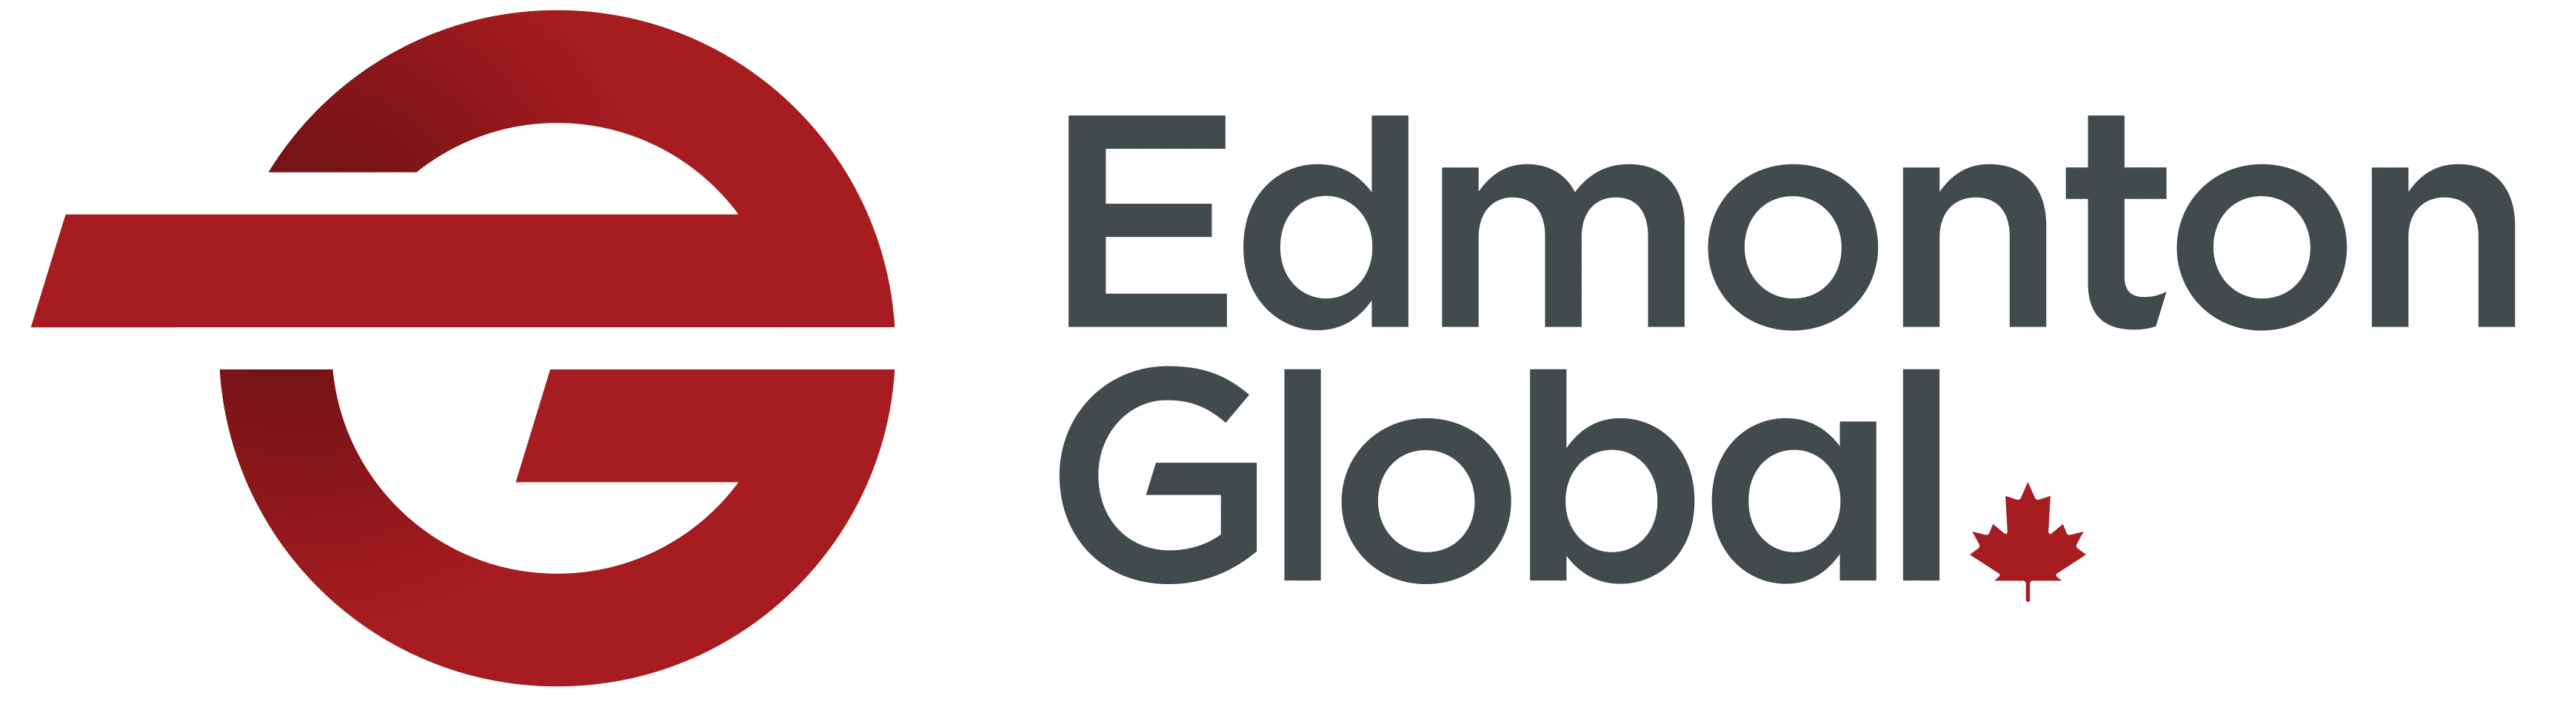 Logo of Edmonton Global